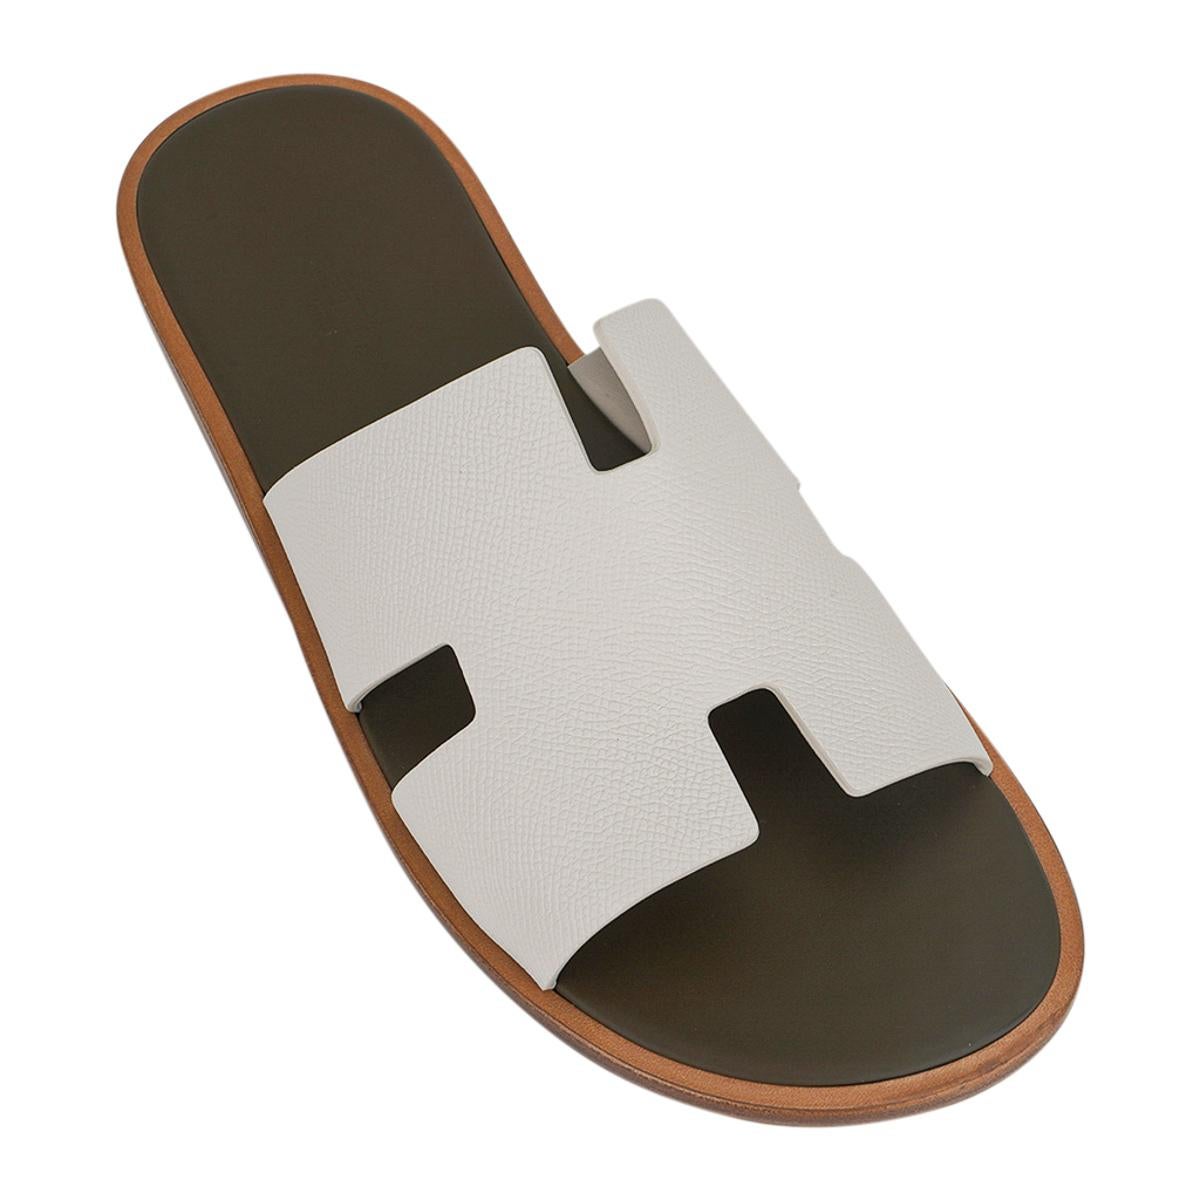 Mightychic propose une paire de  Les sandales Izmir pour homme de Hermès sont présentées en Beige Glaise et Vert Toundre.
L'emblématique découpe en H sur le dessus du pied en cuir Epsom.
Des couleurs sophistiquées dans une silhouette qui convient à